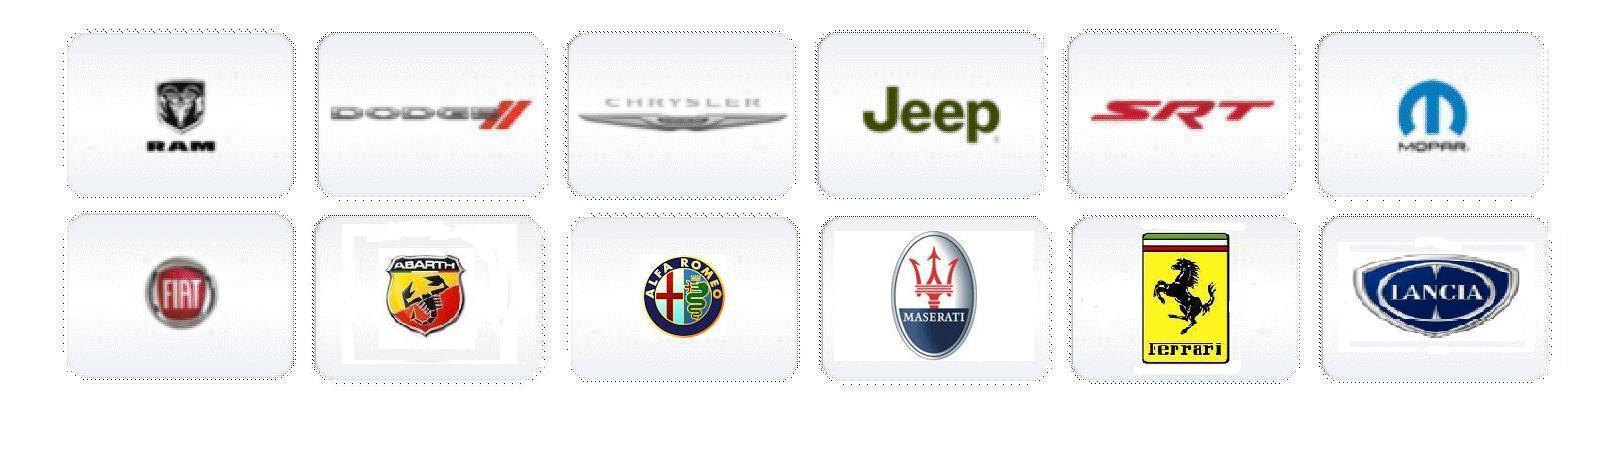 Chrysler brands #1